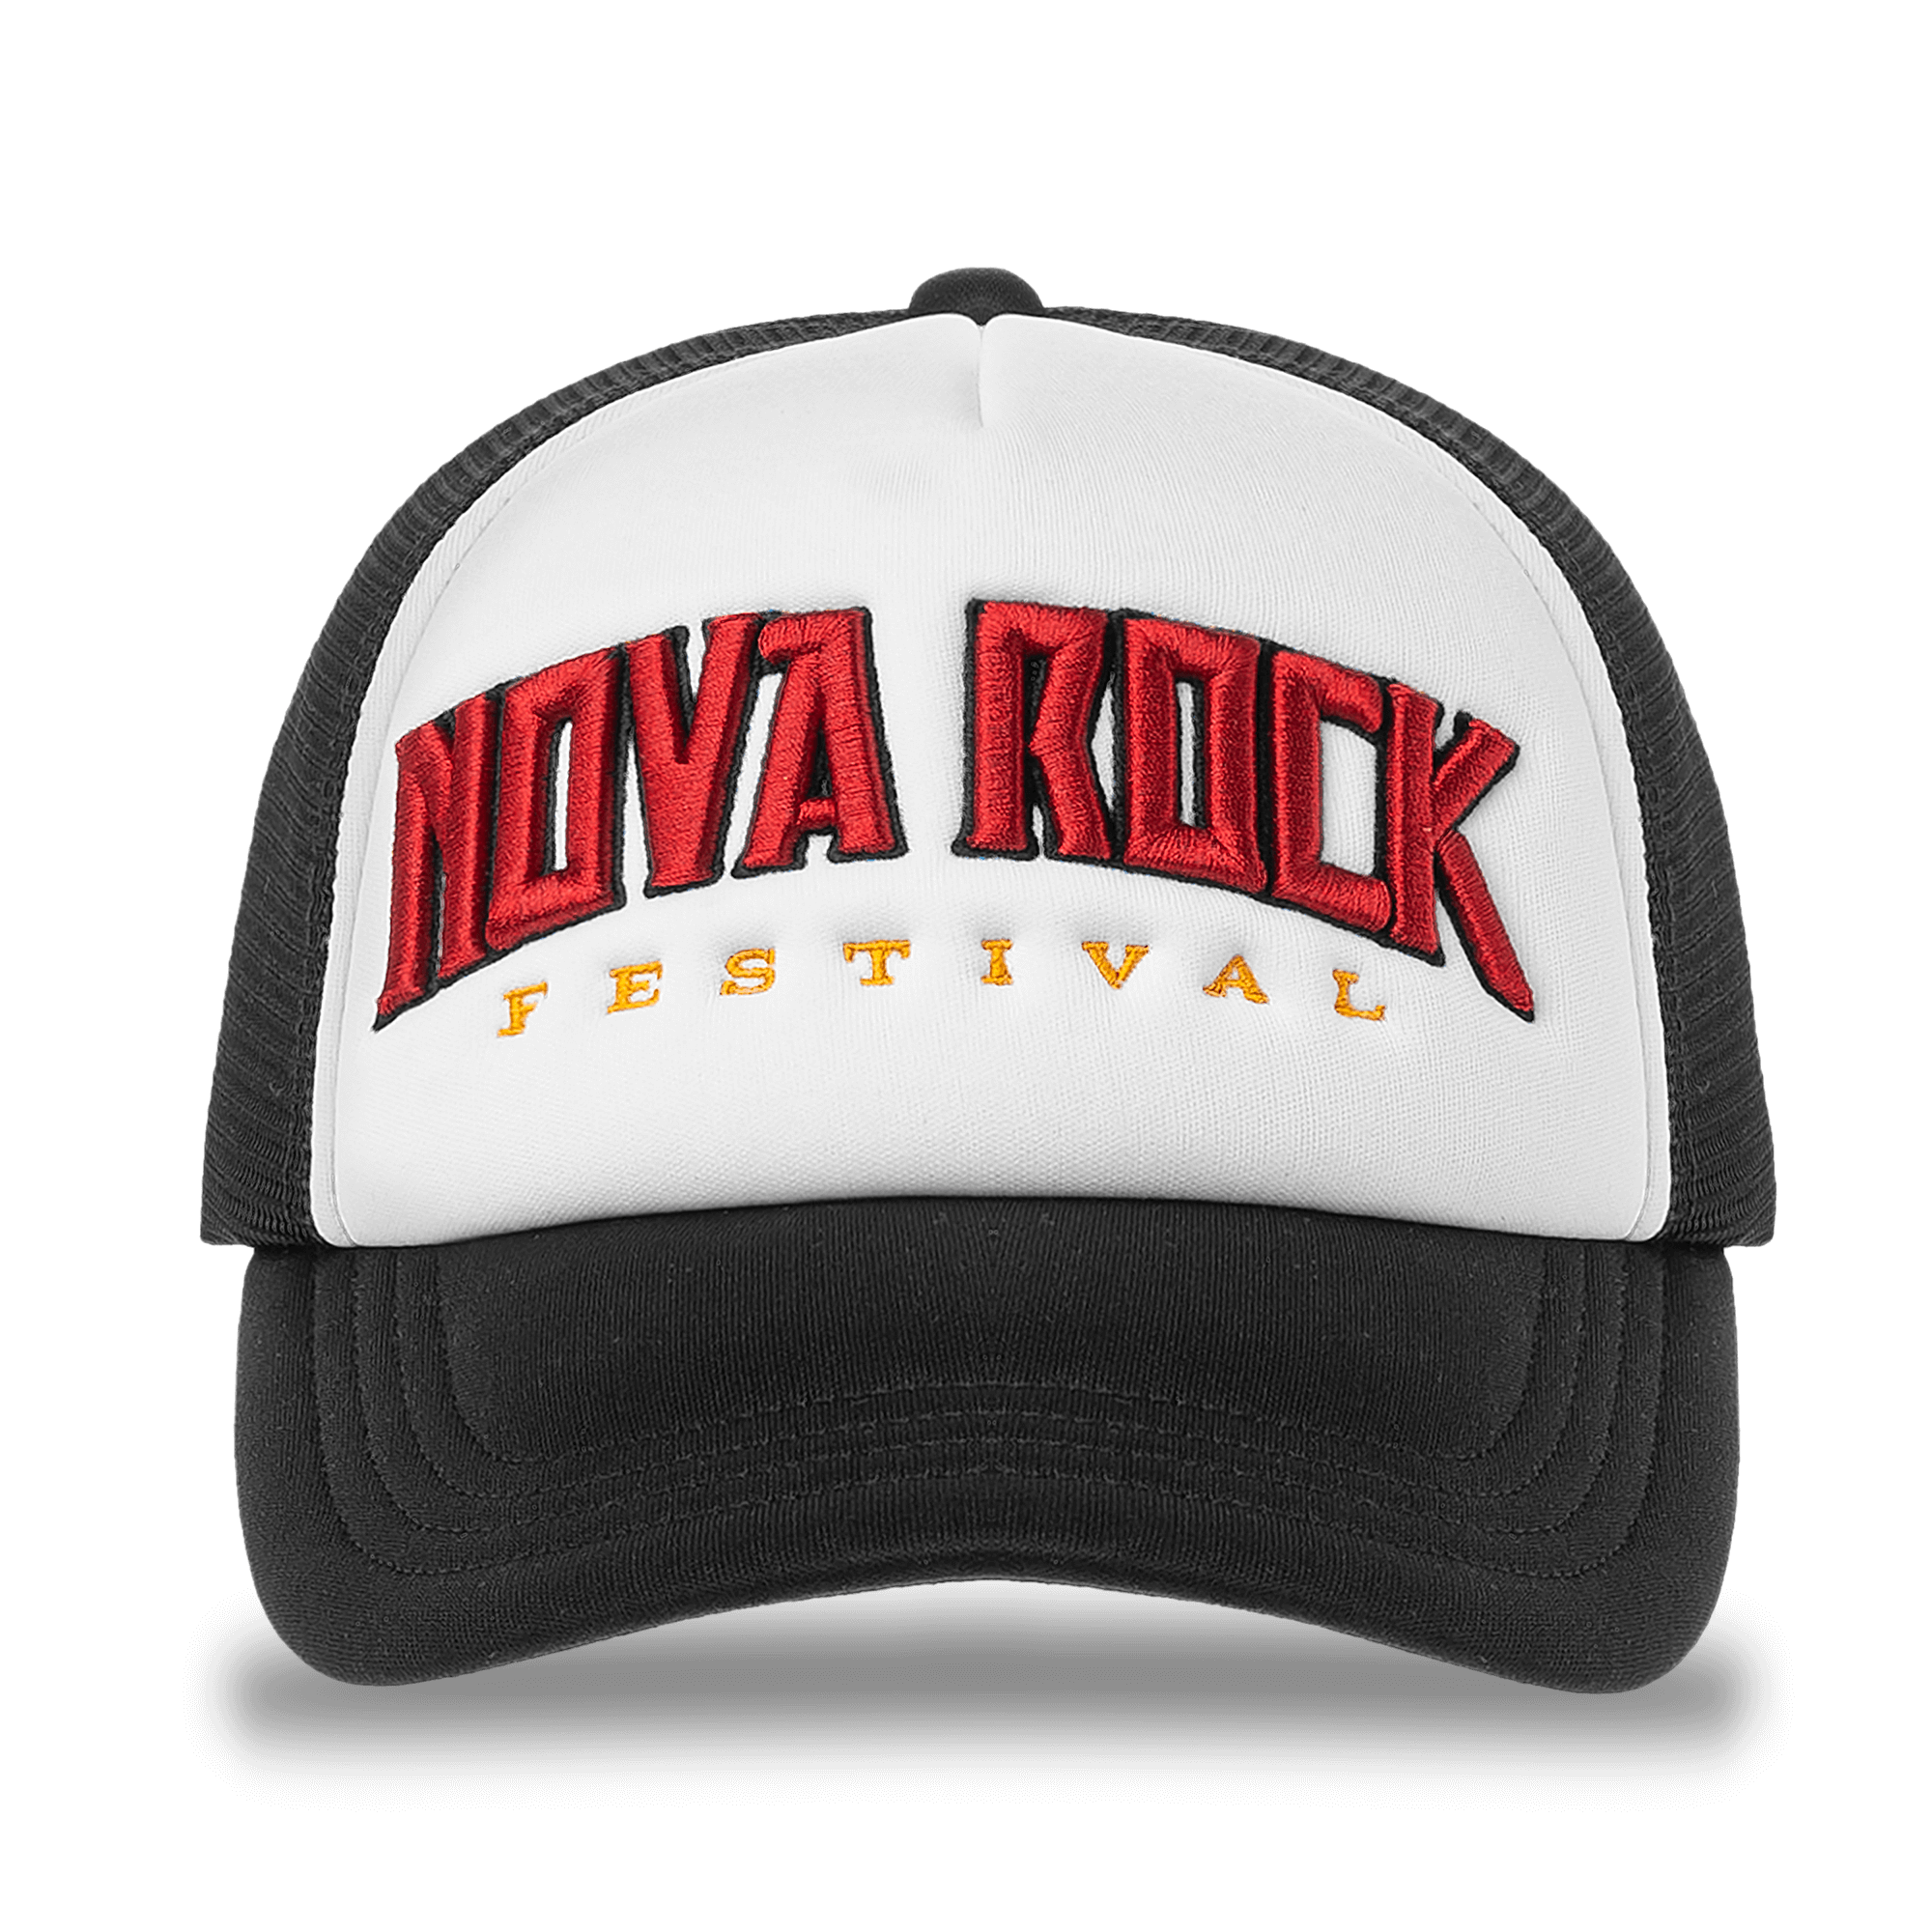 https://images.bravado.de/prod/product-assets/product-asset-data/nova-rock-festival/nova-rock-2023/products/502174/web/394175/image-thumb__394175__3000x3000_original/Nova-Rock-Festival-On-The-Road-Basecap-schwarz-502174-394175.82b22301.png